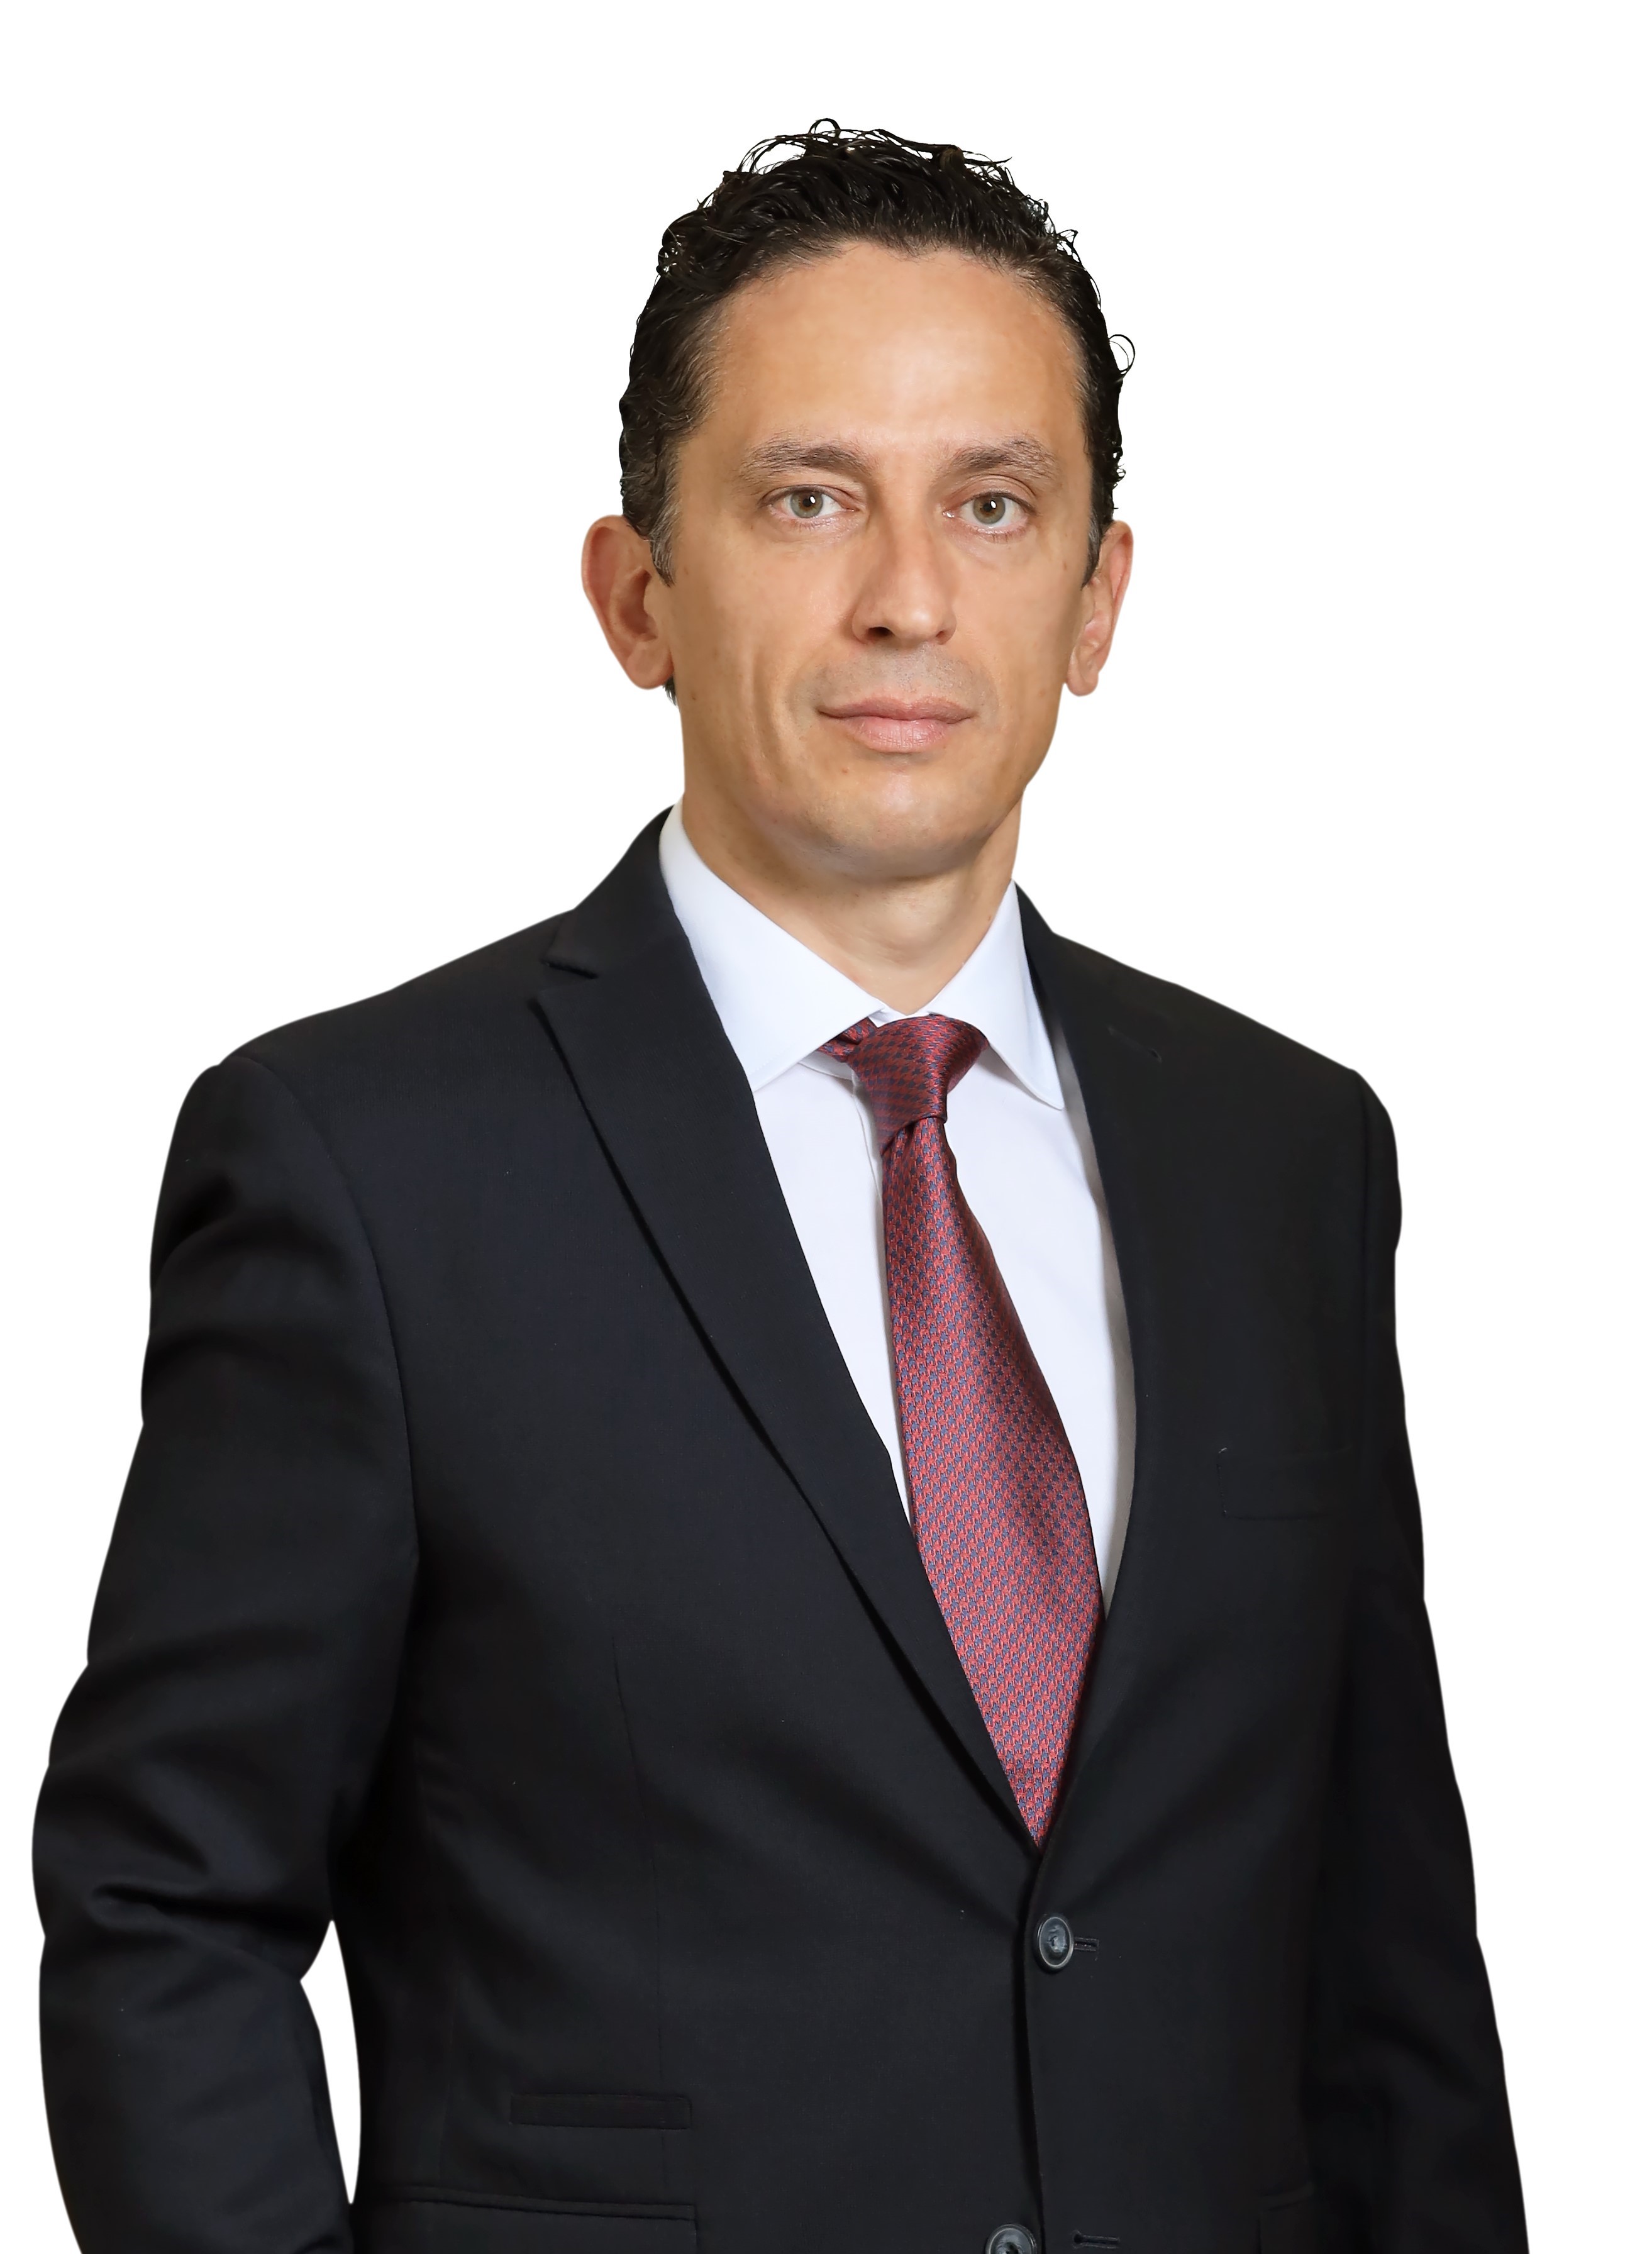 Anadolu Hayat Emeklilik Deputy General Manager Ahmet Altınsoy